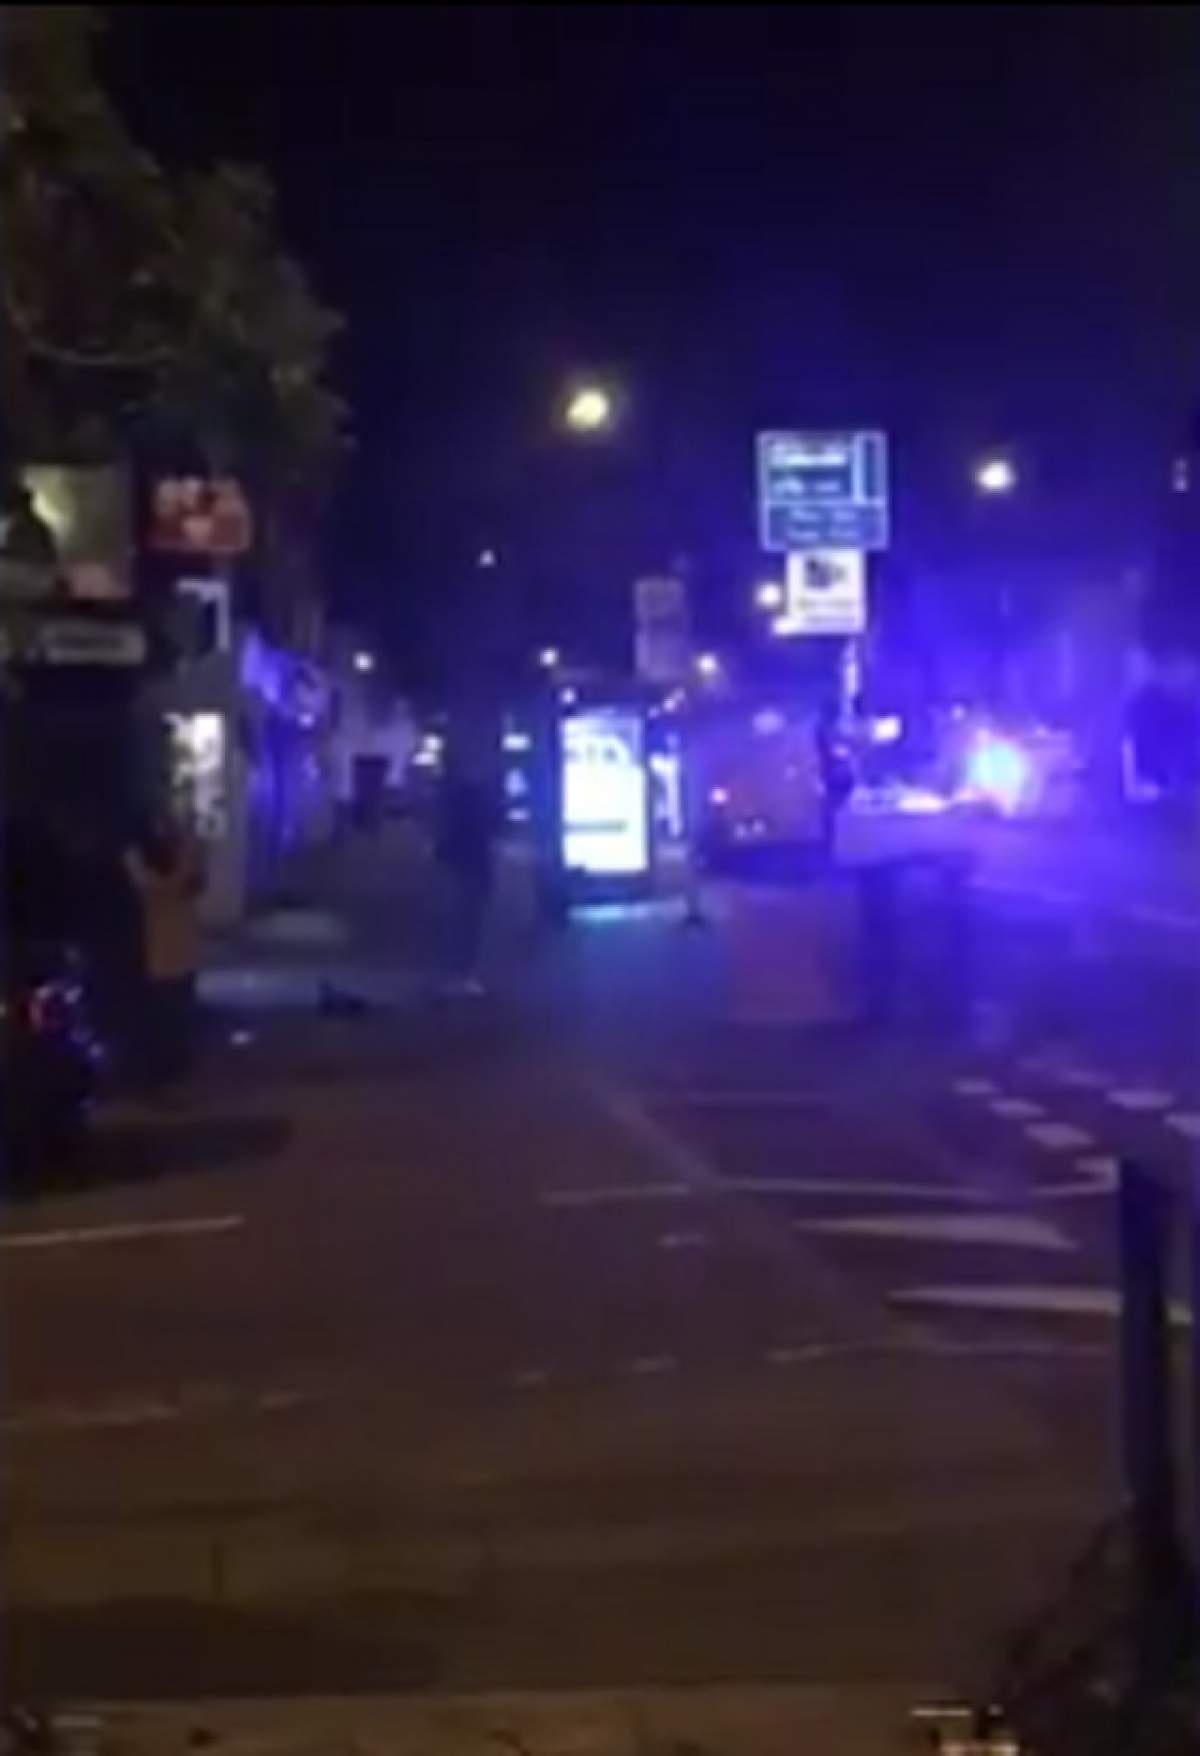 VIDEO / Încă o zi de teroare la Londra! Trei persoane au fost rănite după ce o maşină a intrat în mulţime în faţa unui bar